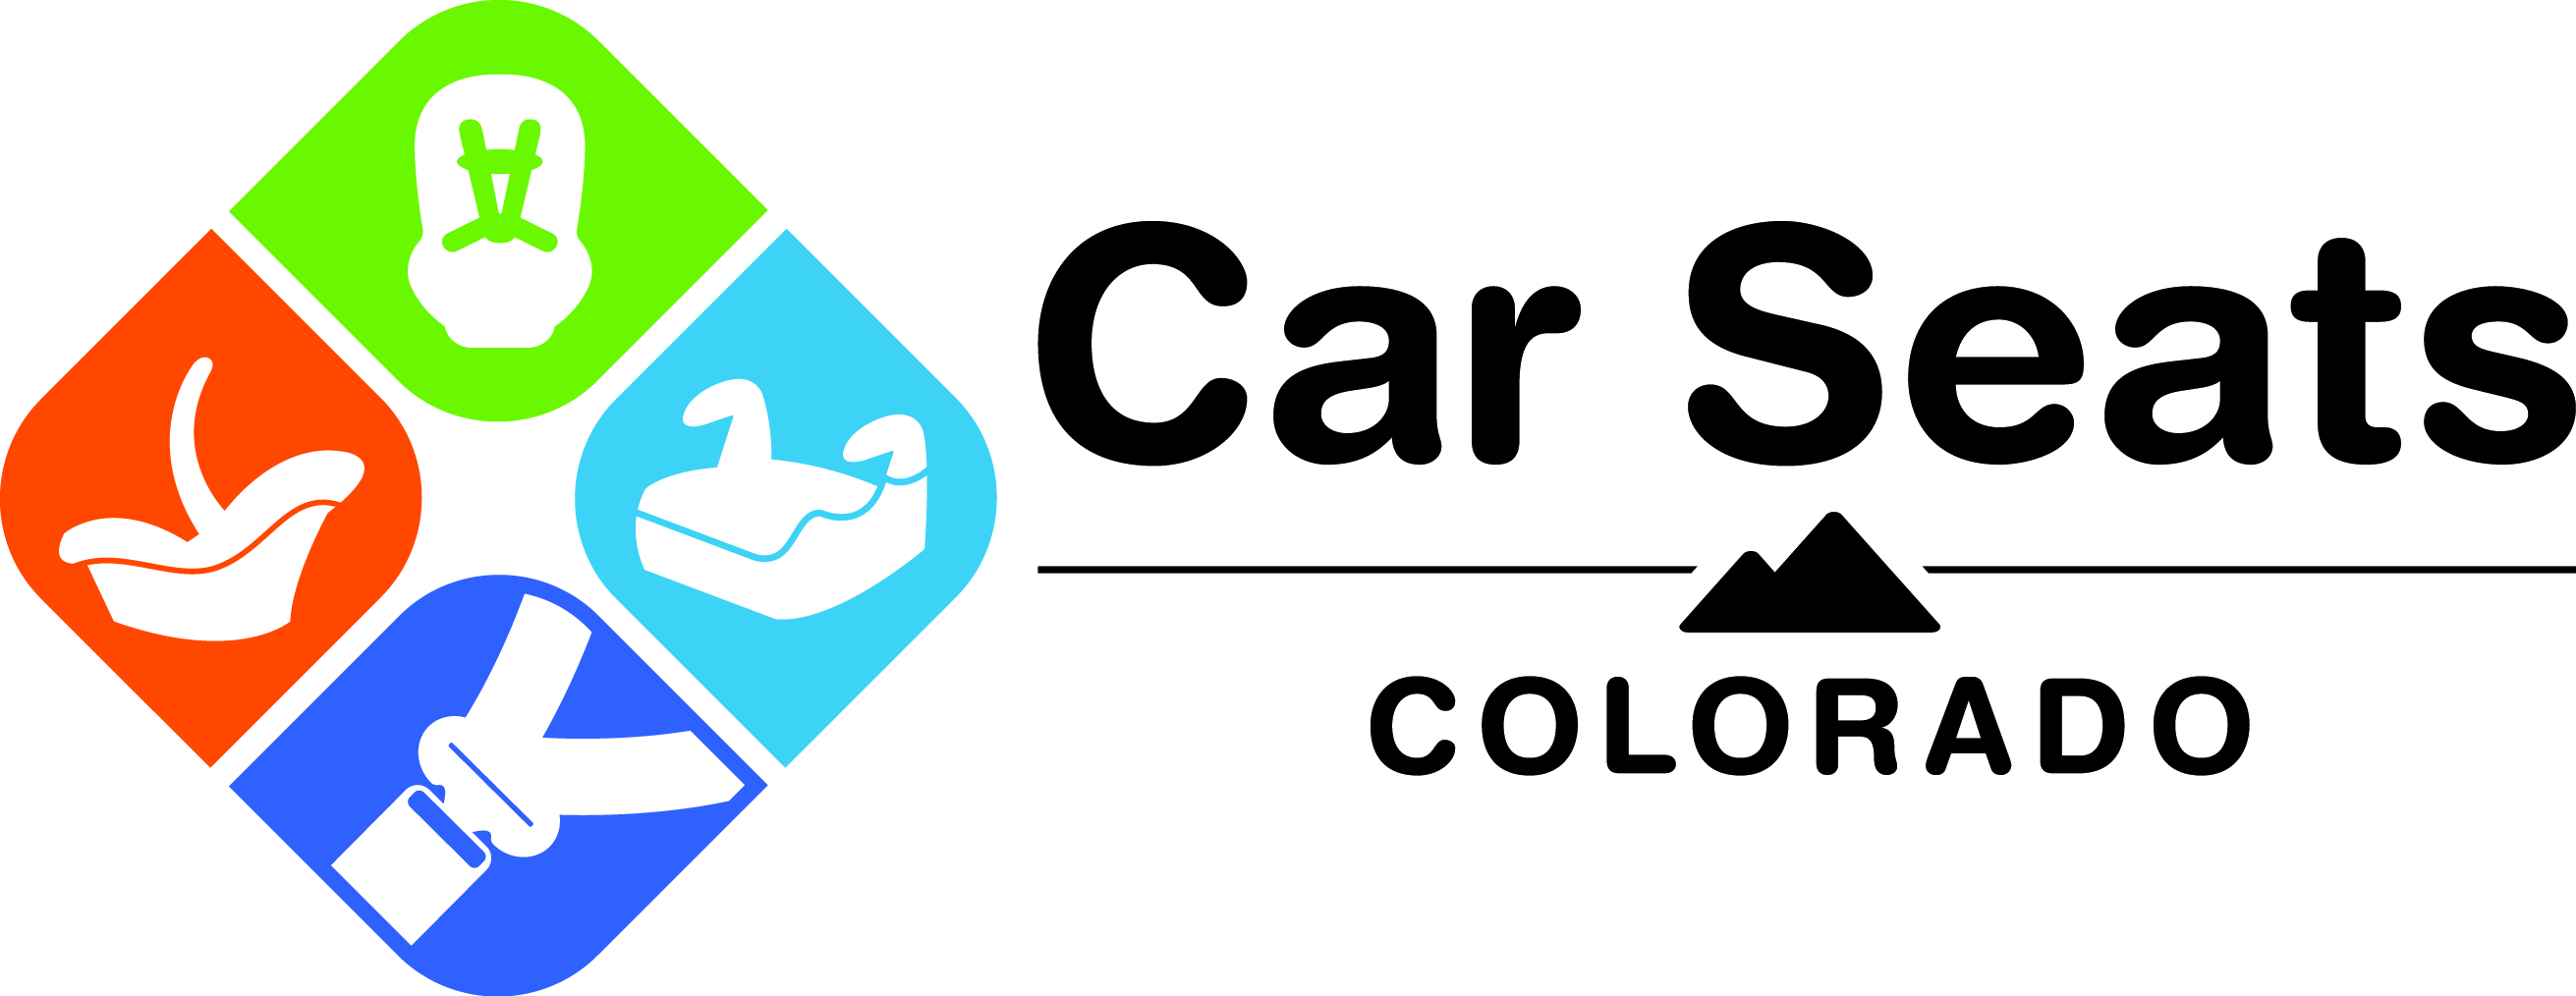 CarSeatsColorado-Logo.jpg detail image